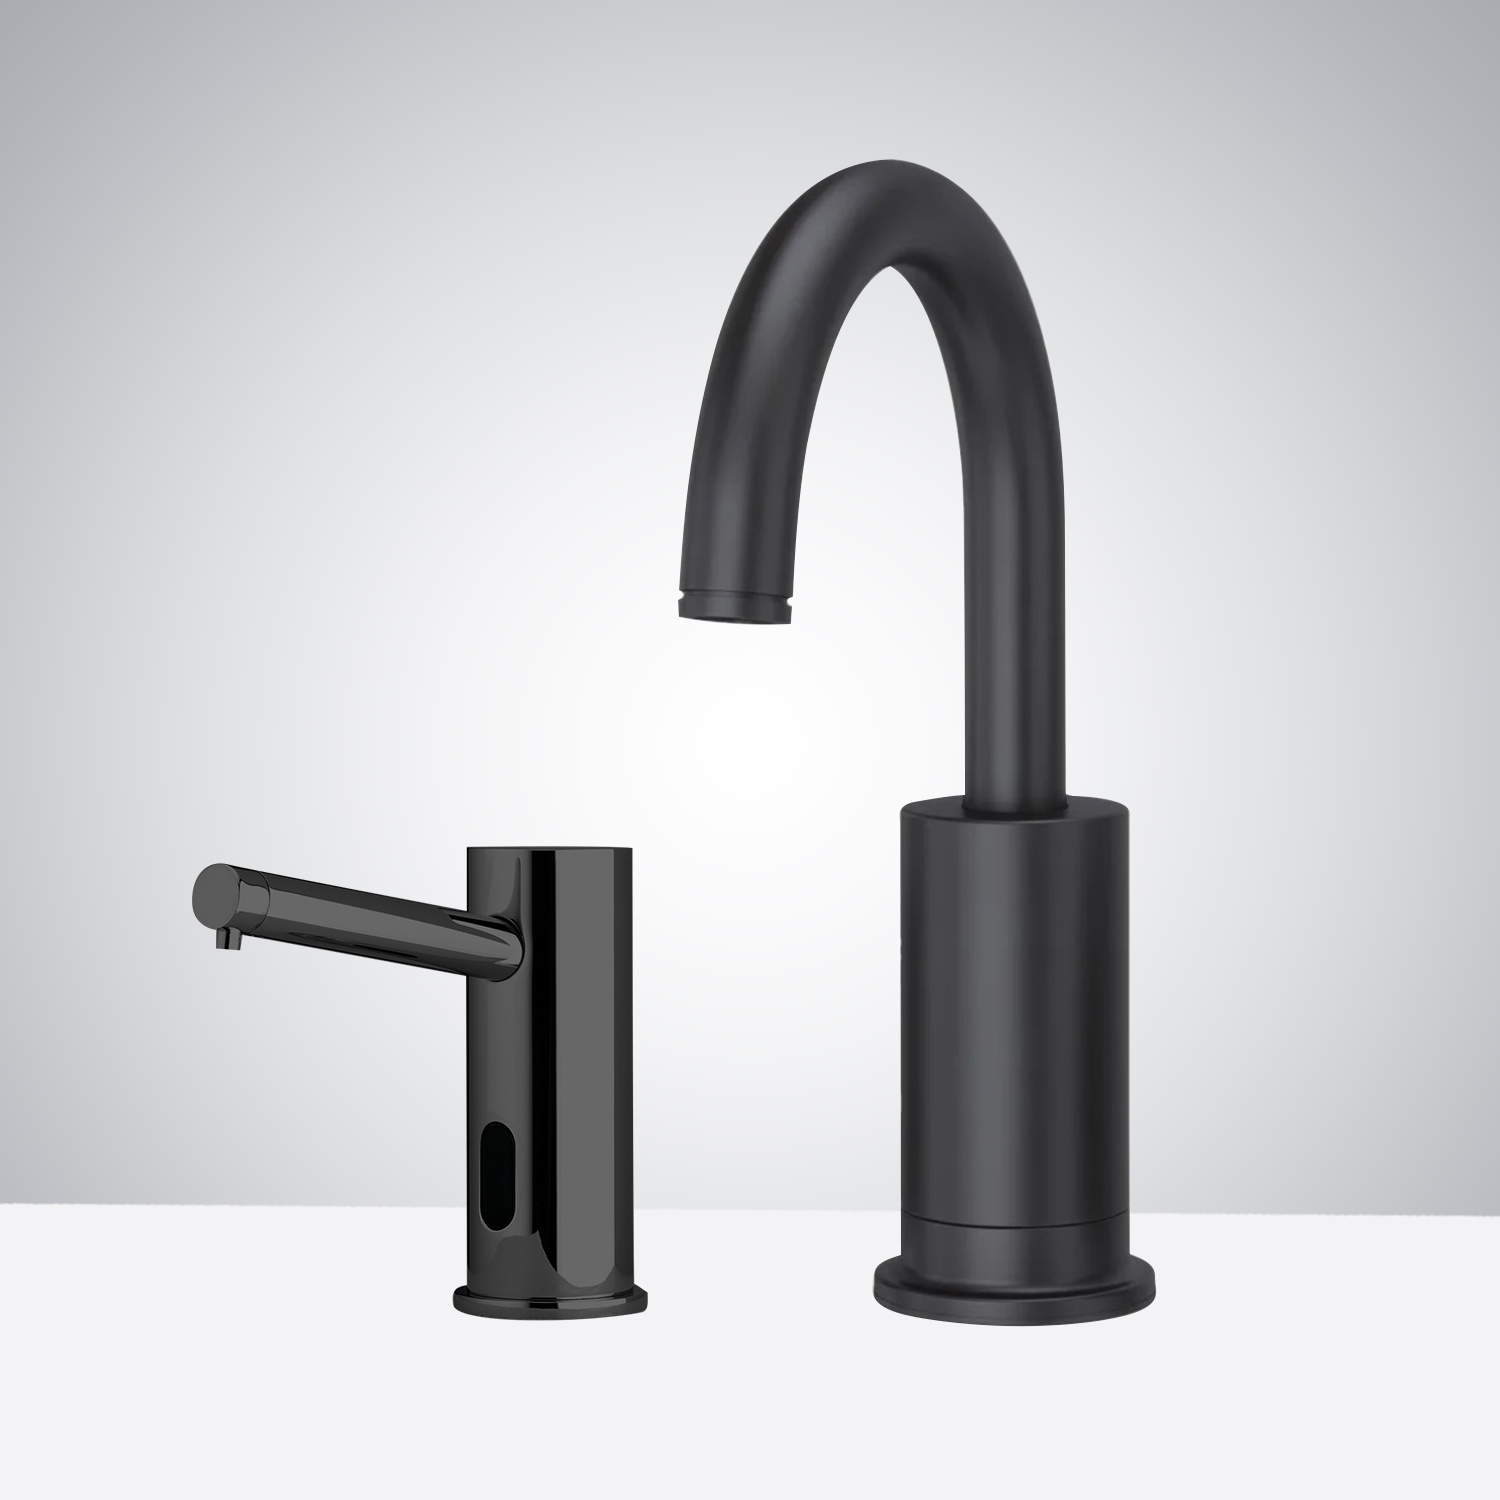 Fontana Sète Motion Sensor Faucet & Automatic Soap Dispenser for Restrooms